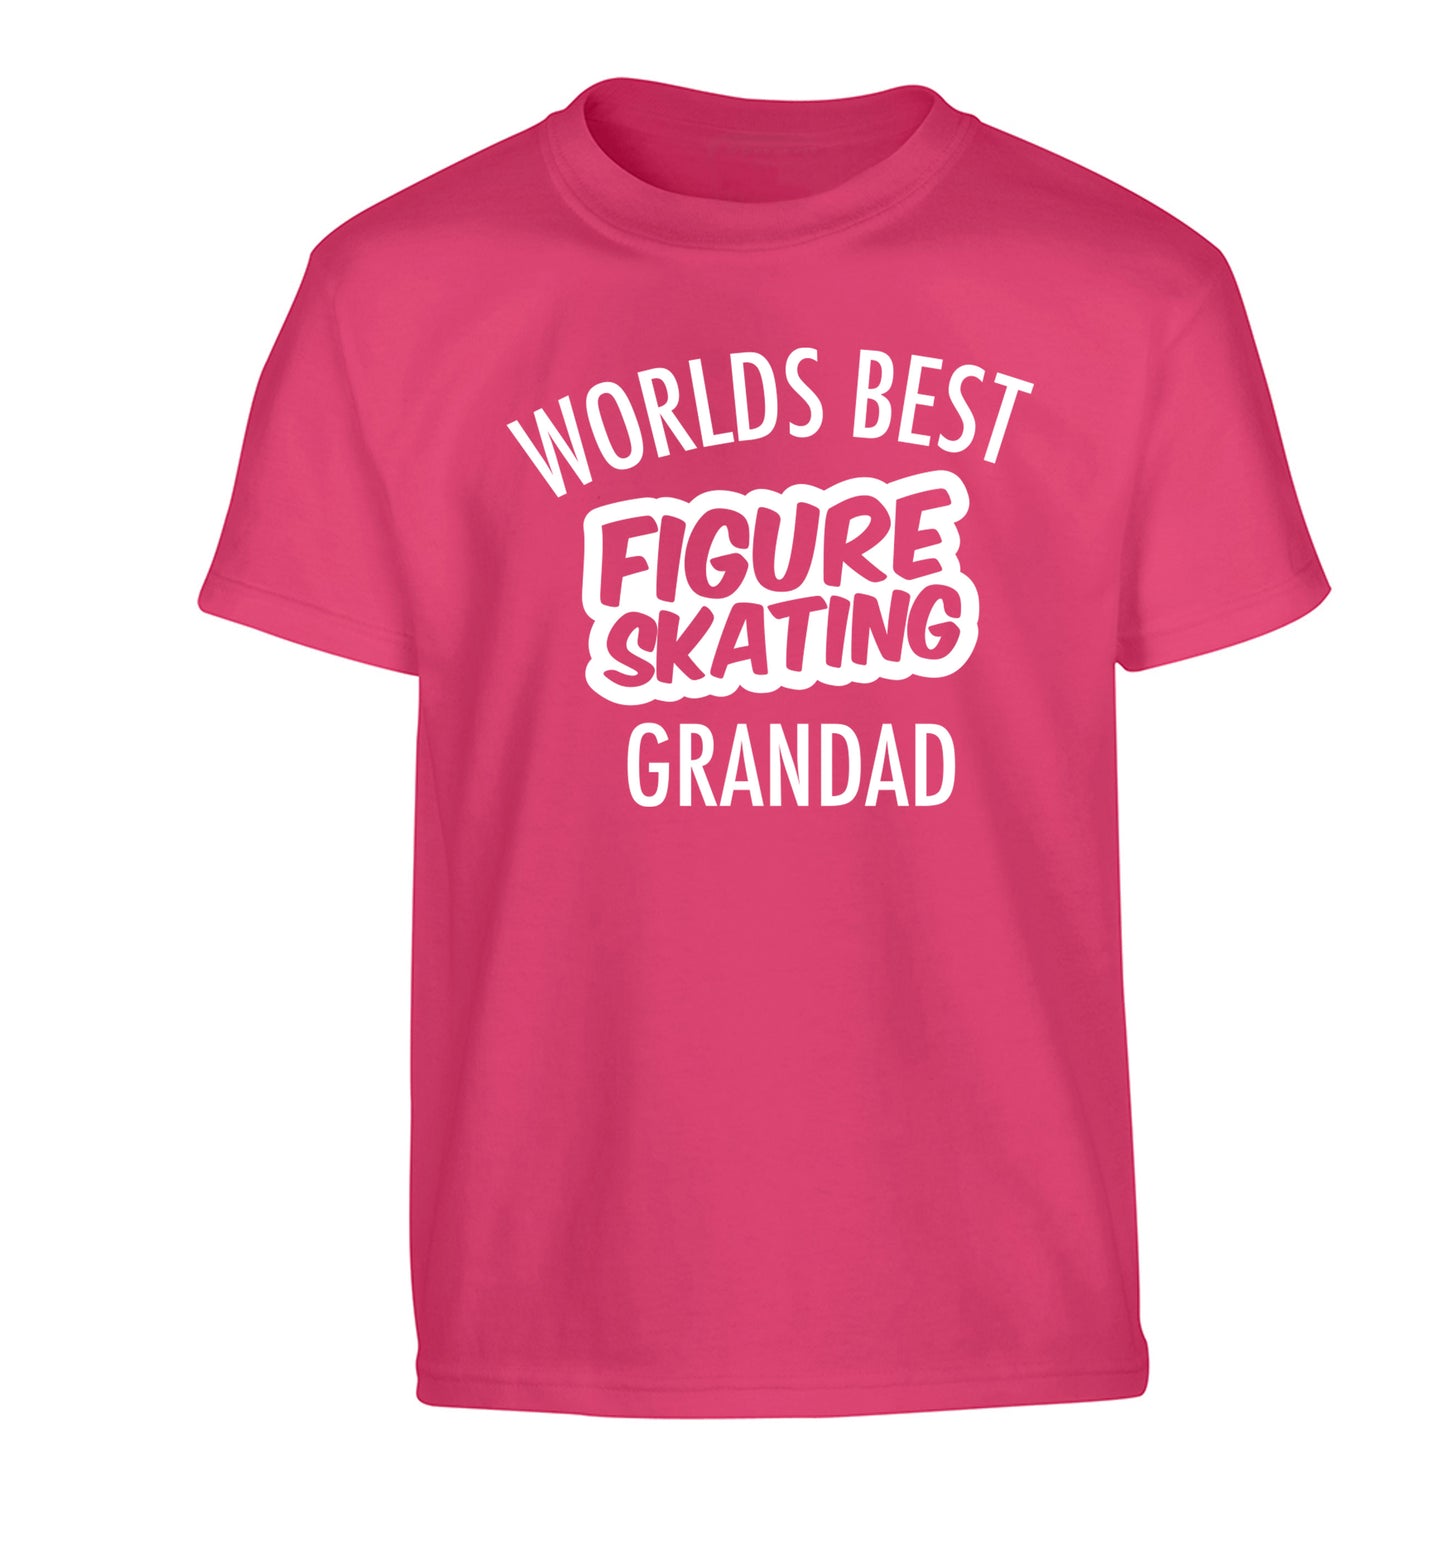 Worlds best figure skating grandad Children's pink Tshirt 12-14 Years